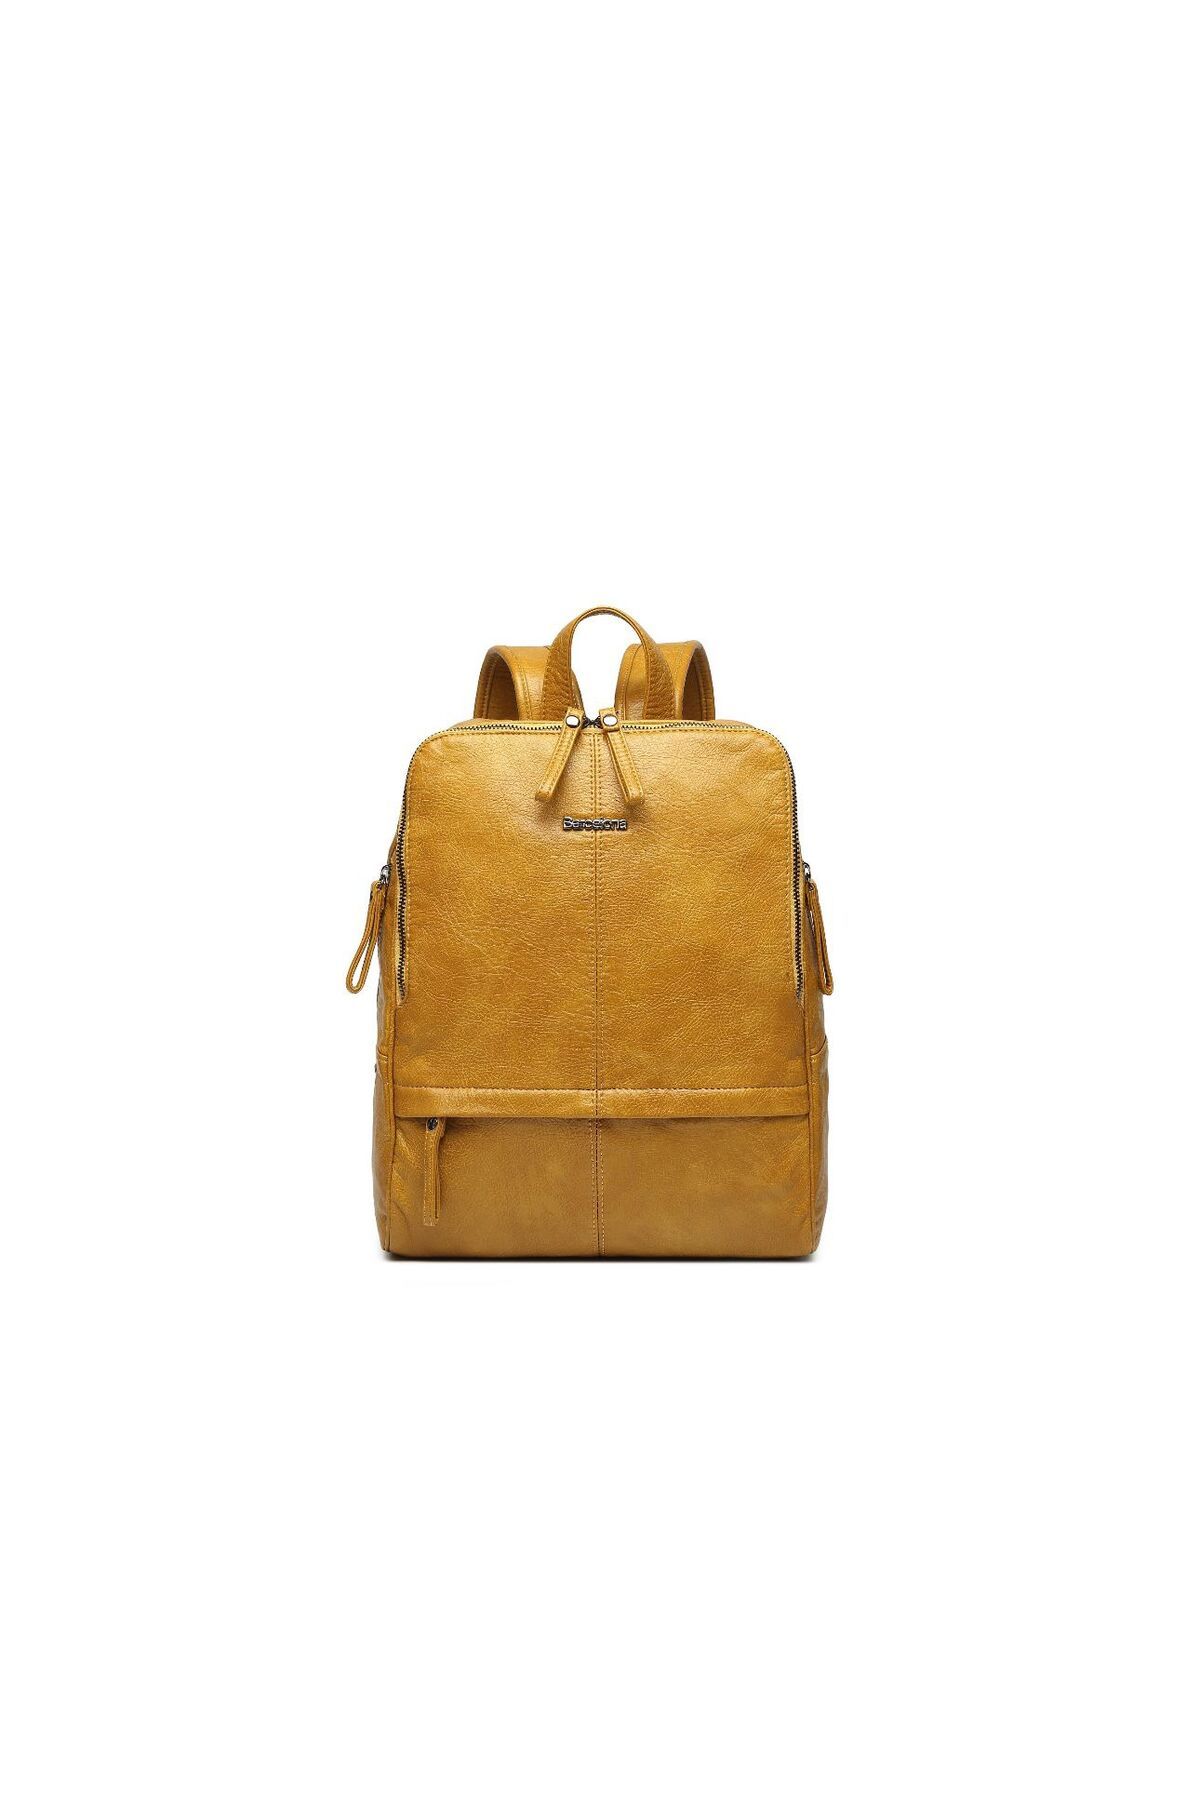 21K Smart Bags 21k-barcelona smart bag ithal Yıkama Deri Orta Boy Kadın Sırt Çantası 1832